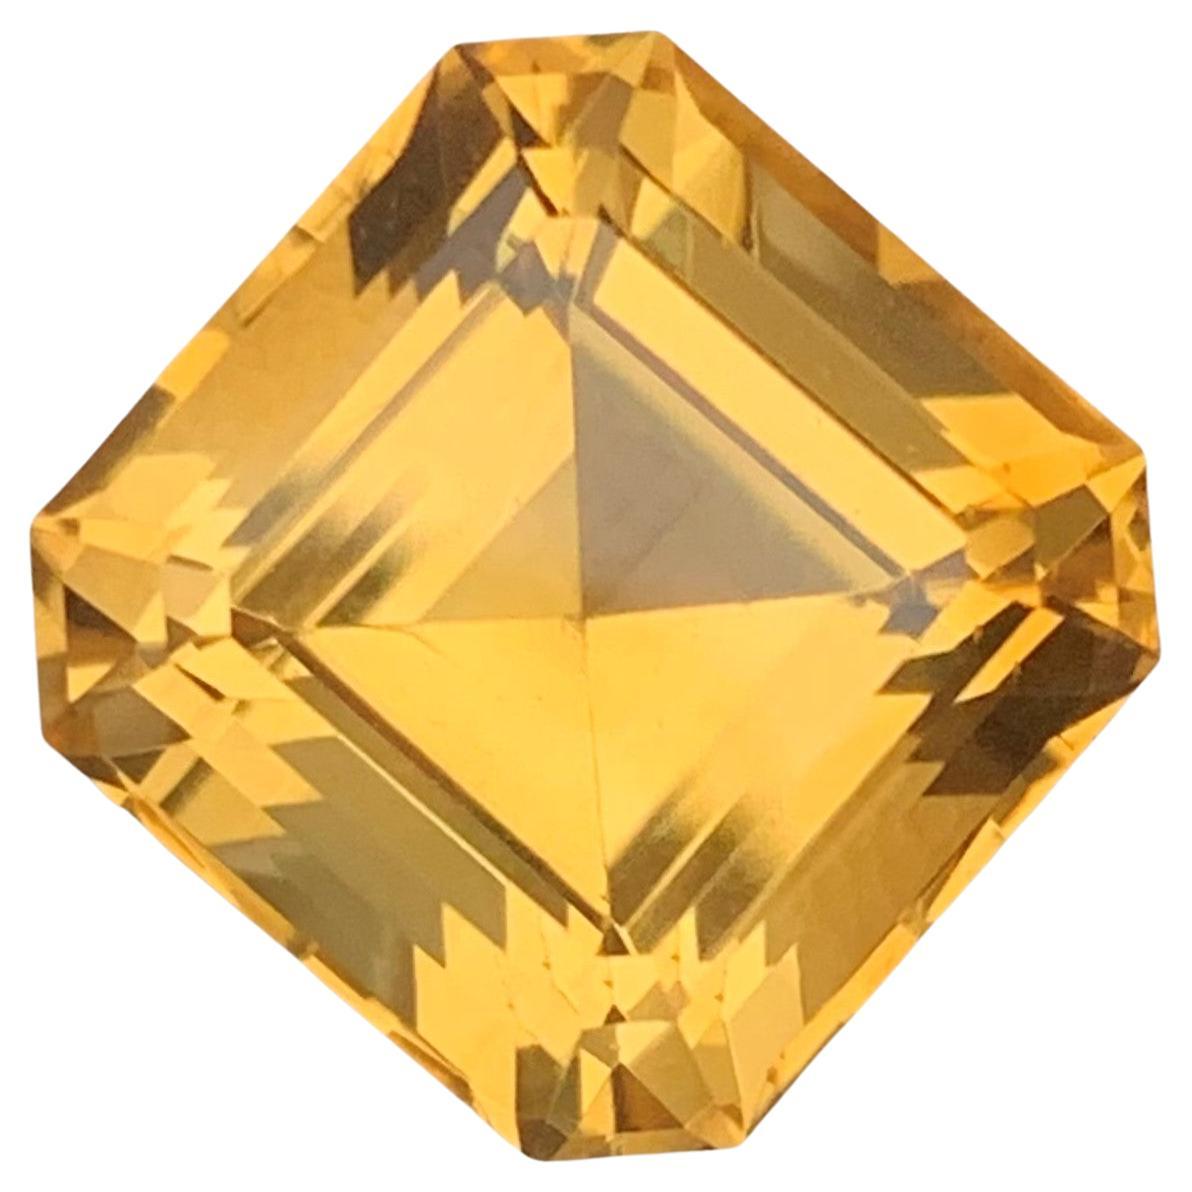 Élégant Citrine carrée parfaite taille Asscher de 9,80 carats, pierre précieuse non sertie, mine du Brésil